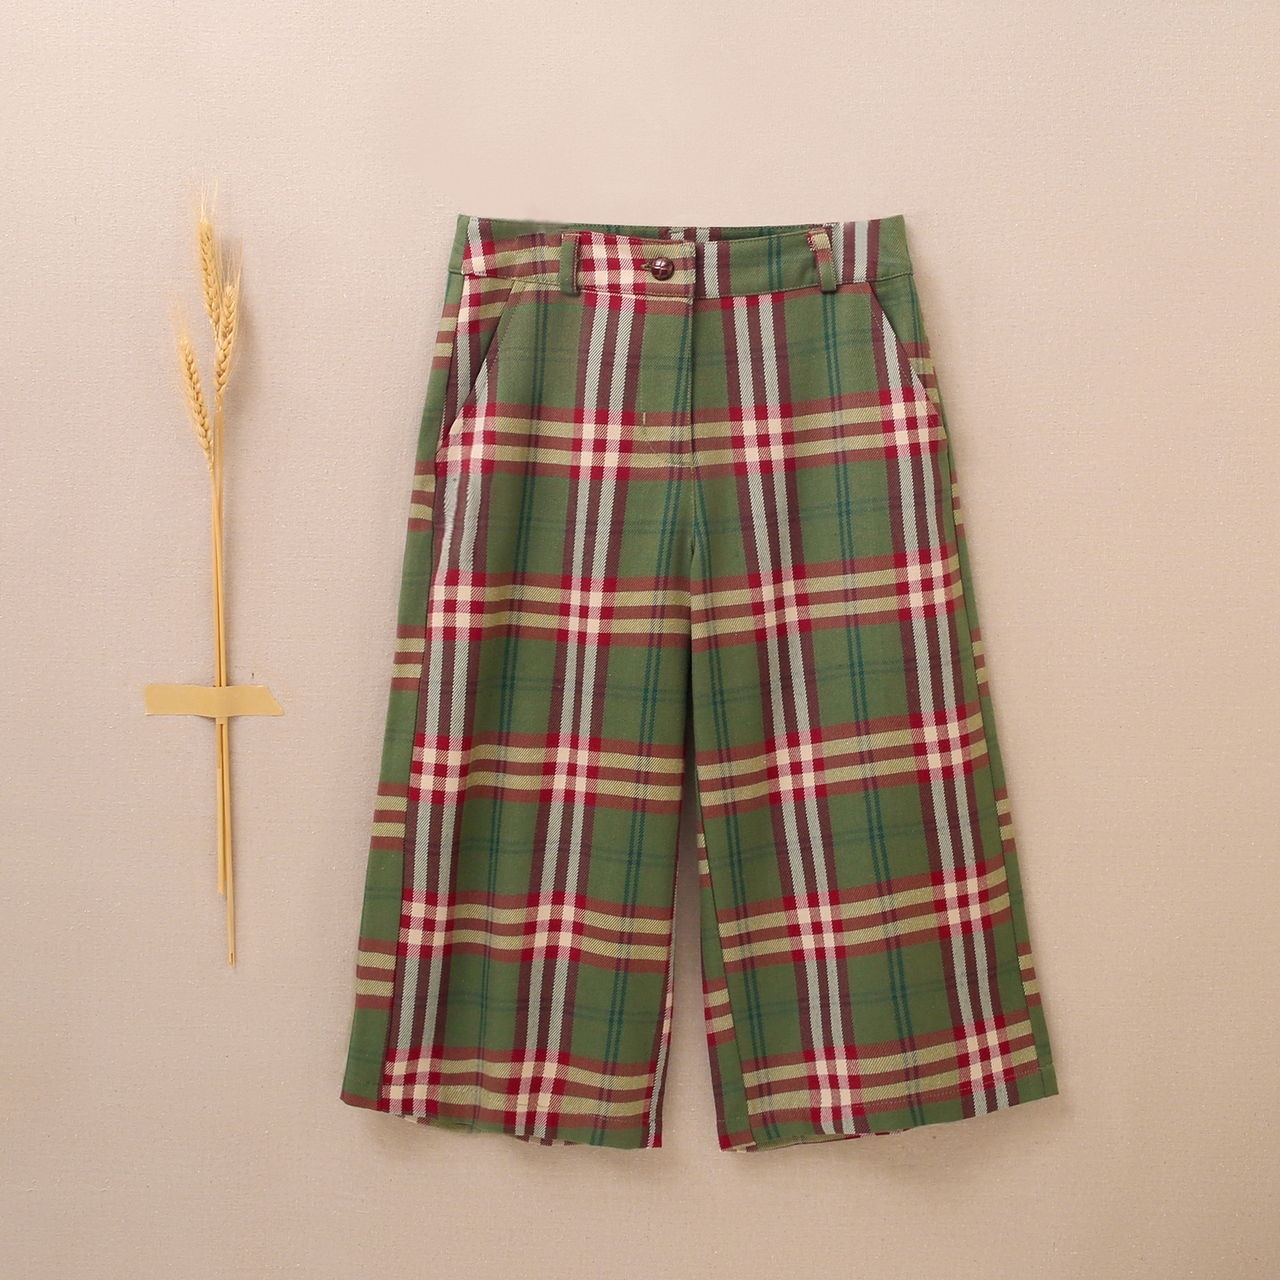 Imagen de Pantalón ancho de niña teen de cuadros verde-granate escoceses 